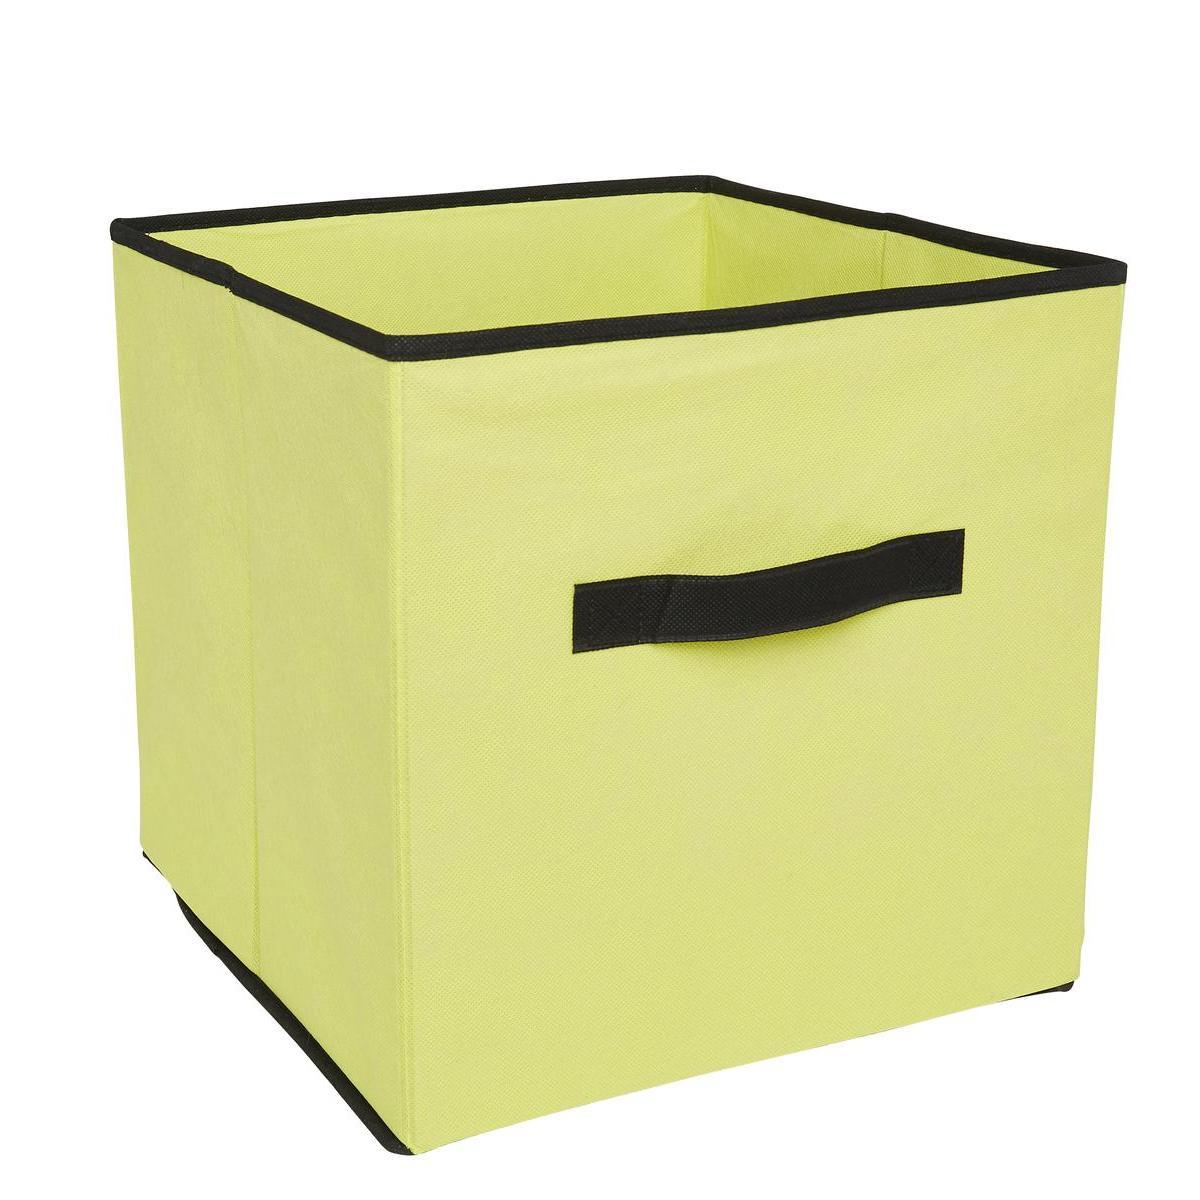 Cube de rangement souple - 31 x 31 x 31 cm - Différents coloris - Vert anis